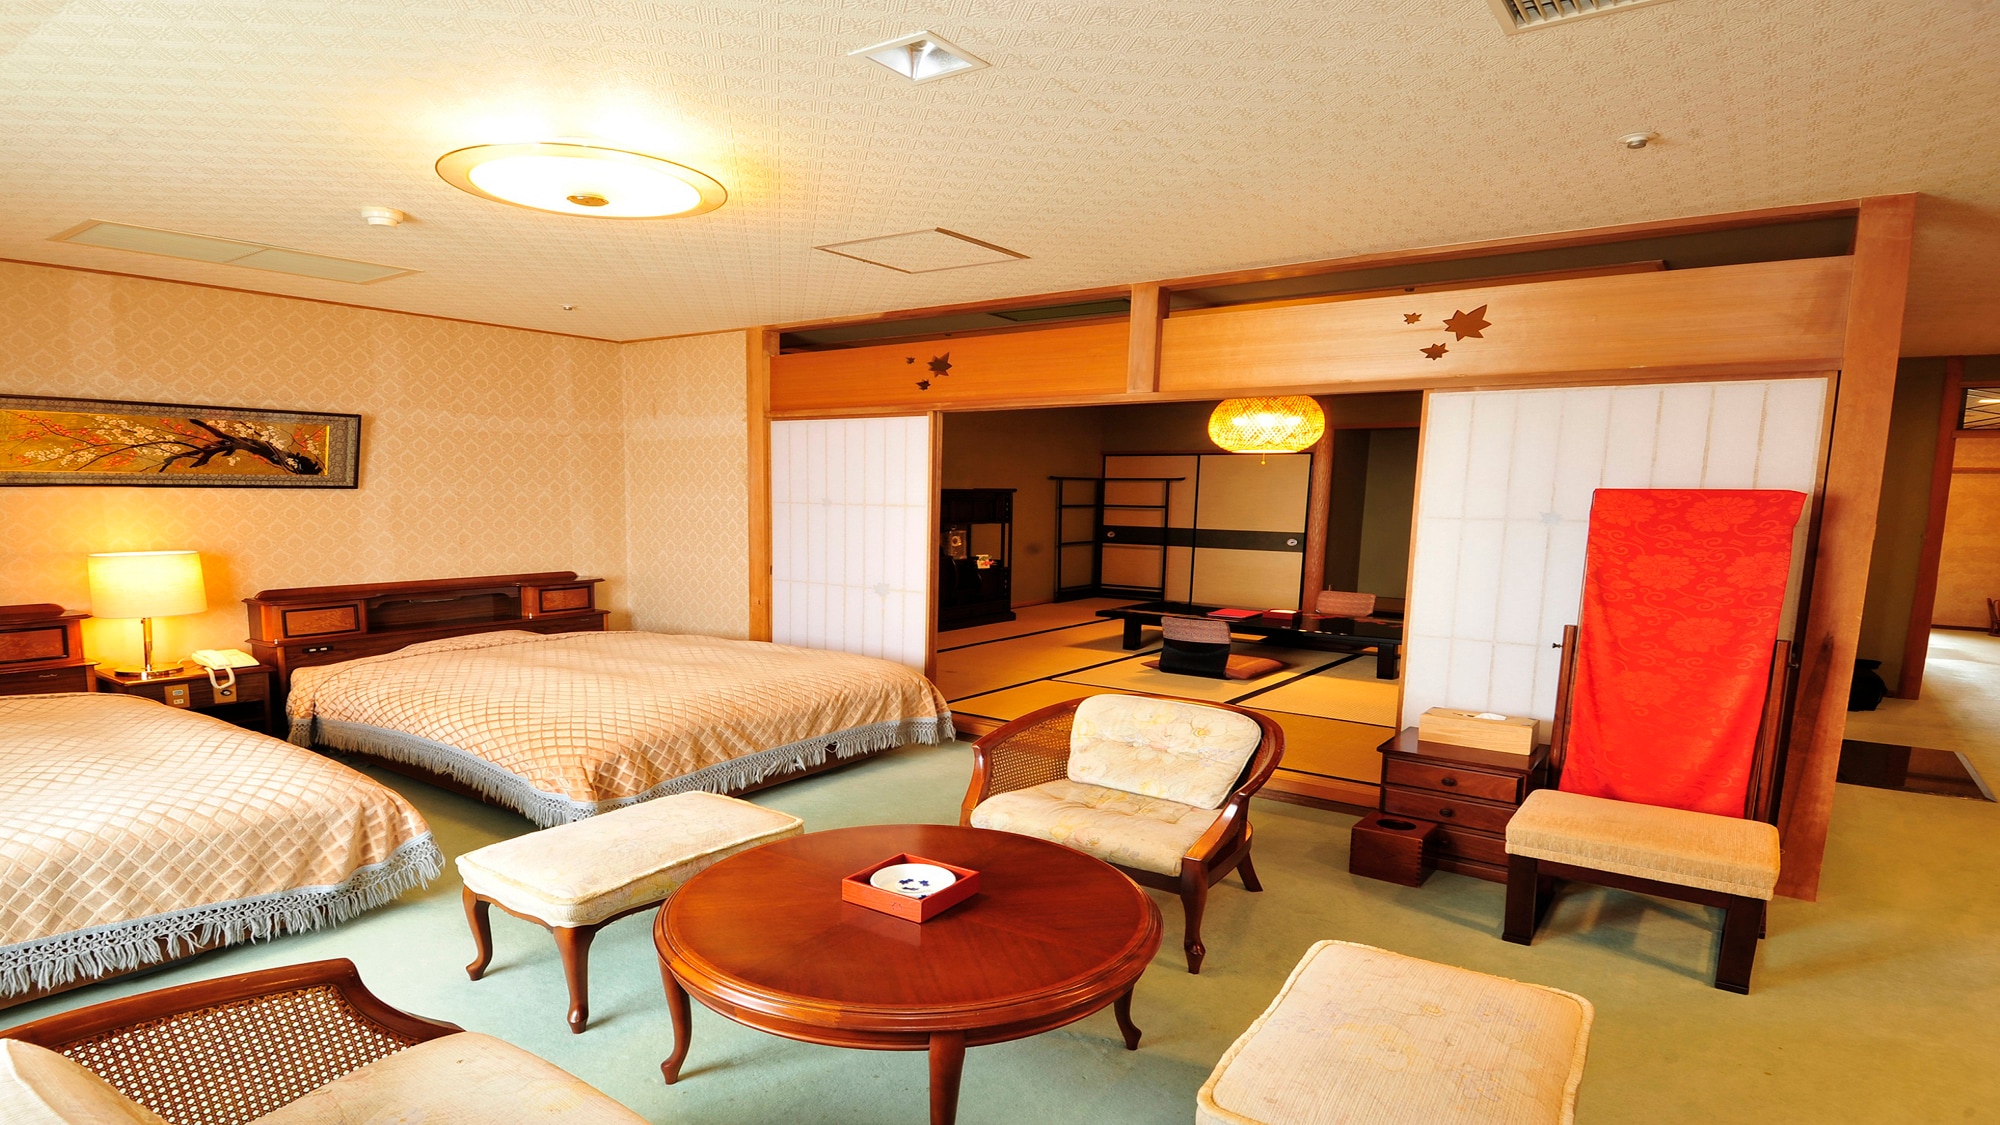 Kamar Jepang dan Barat (12,5 tikar tatami + tempat tidur twin)